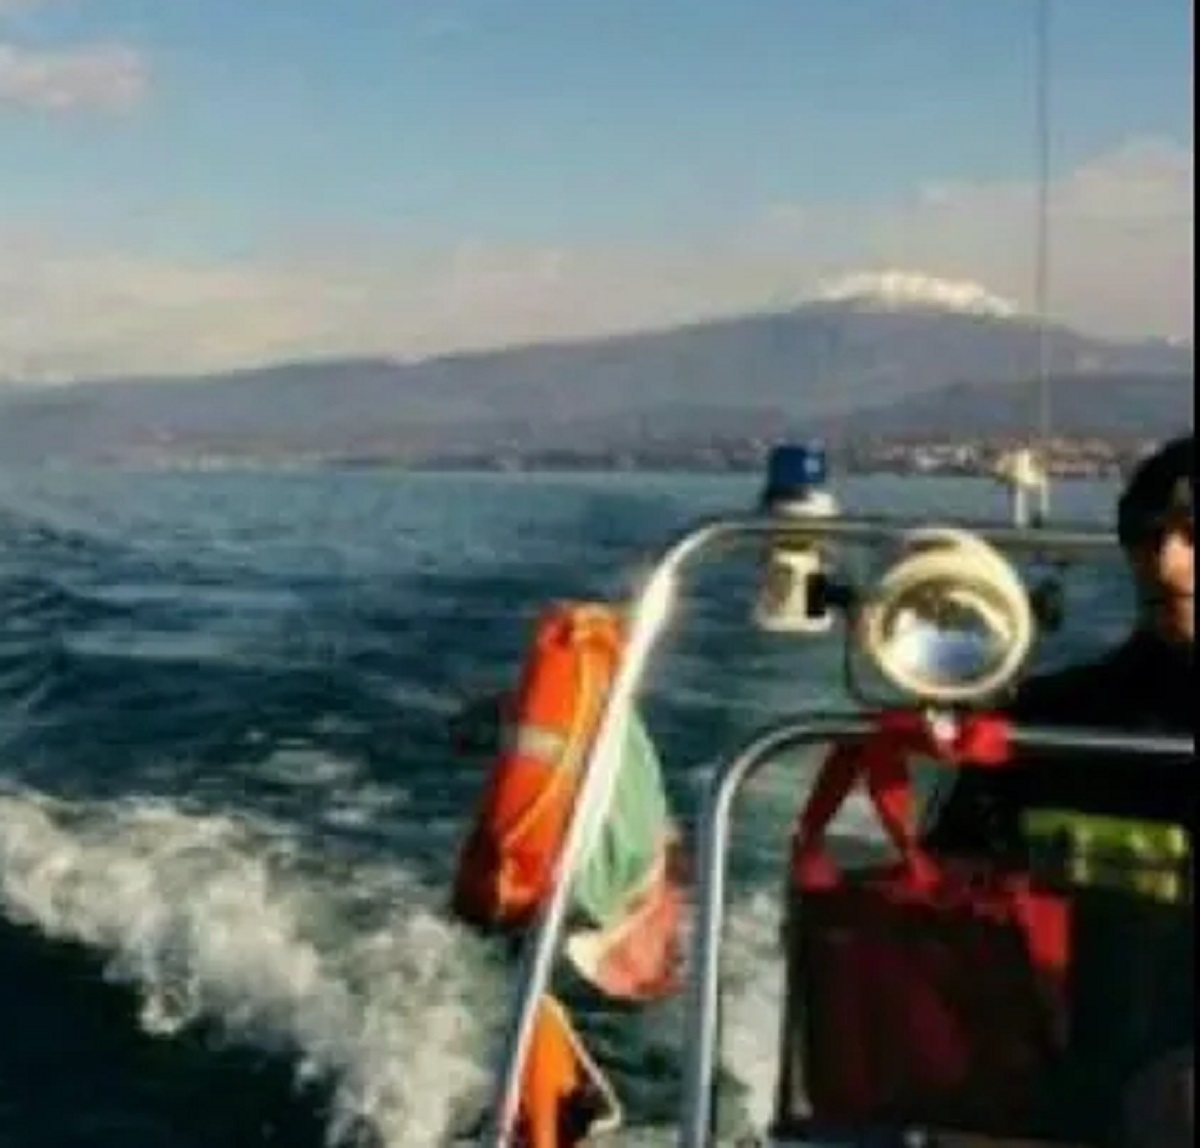 Aran Chada disperso nelle acque del Lago di Garda